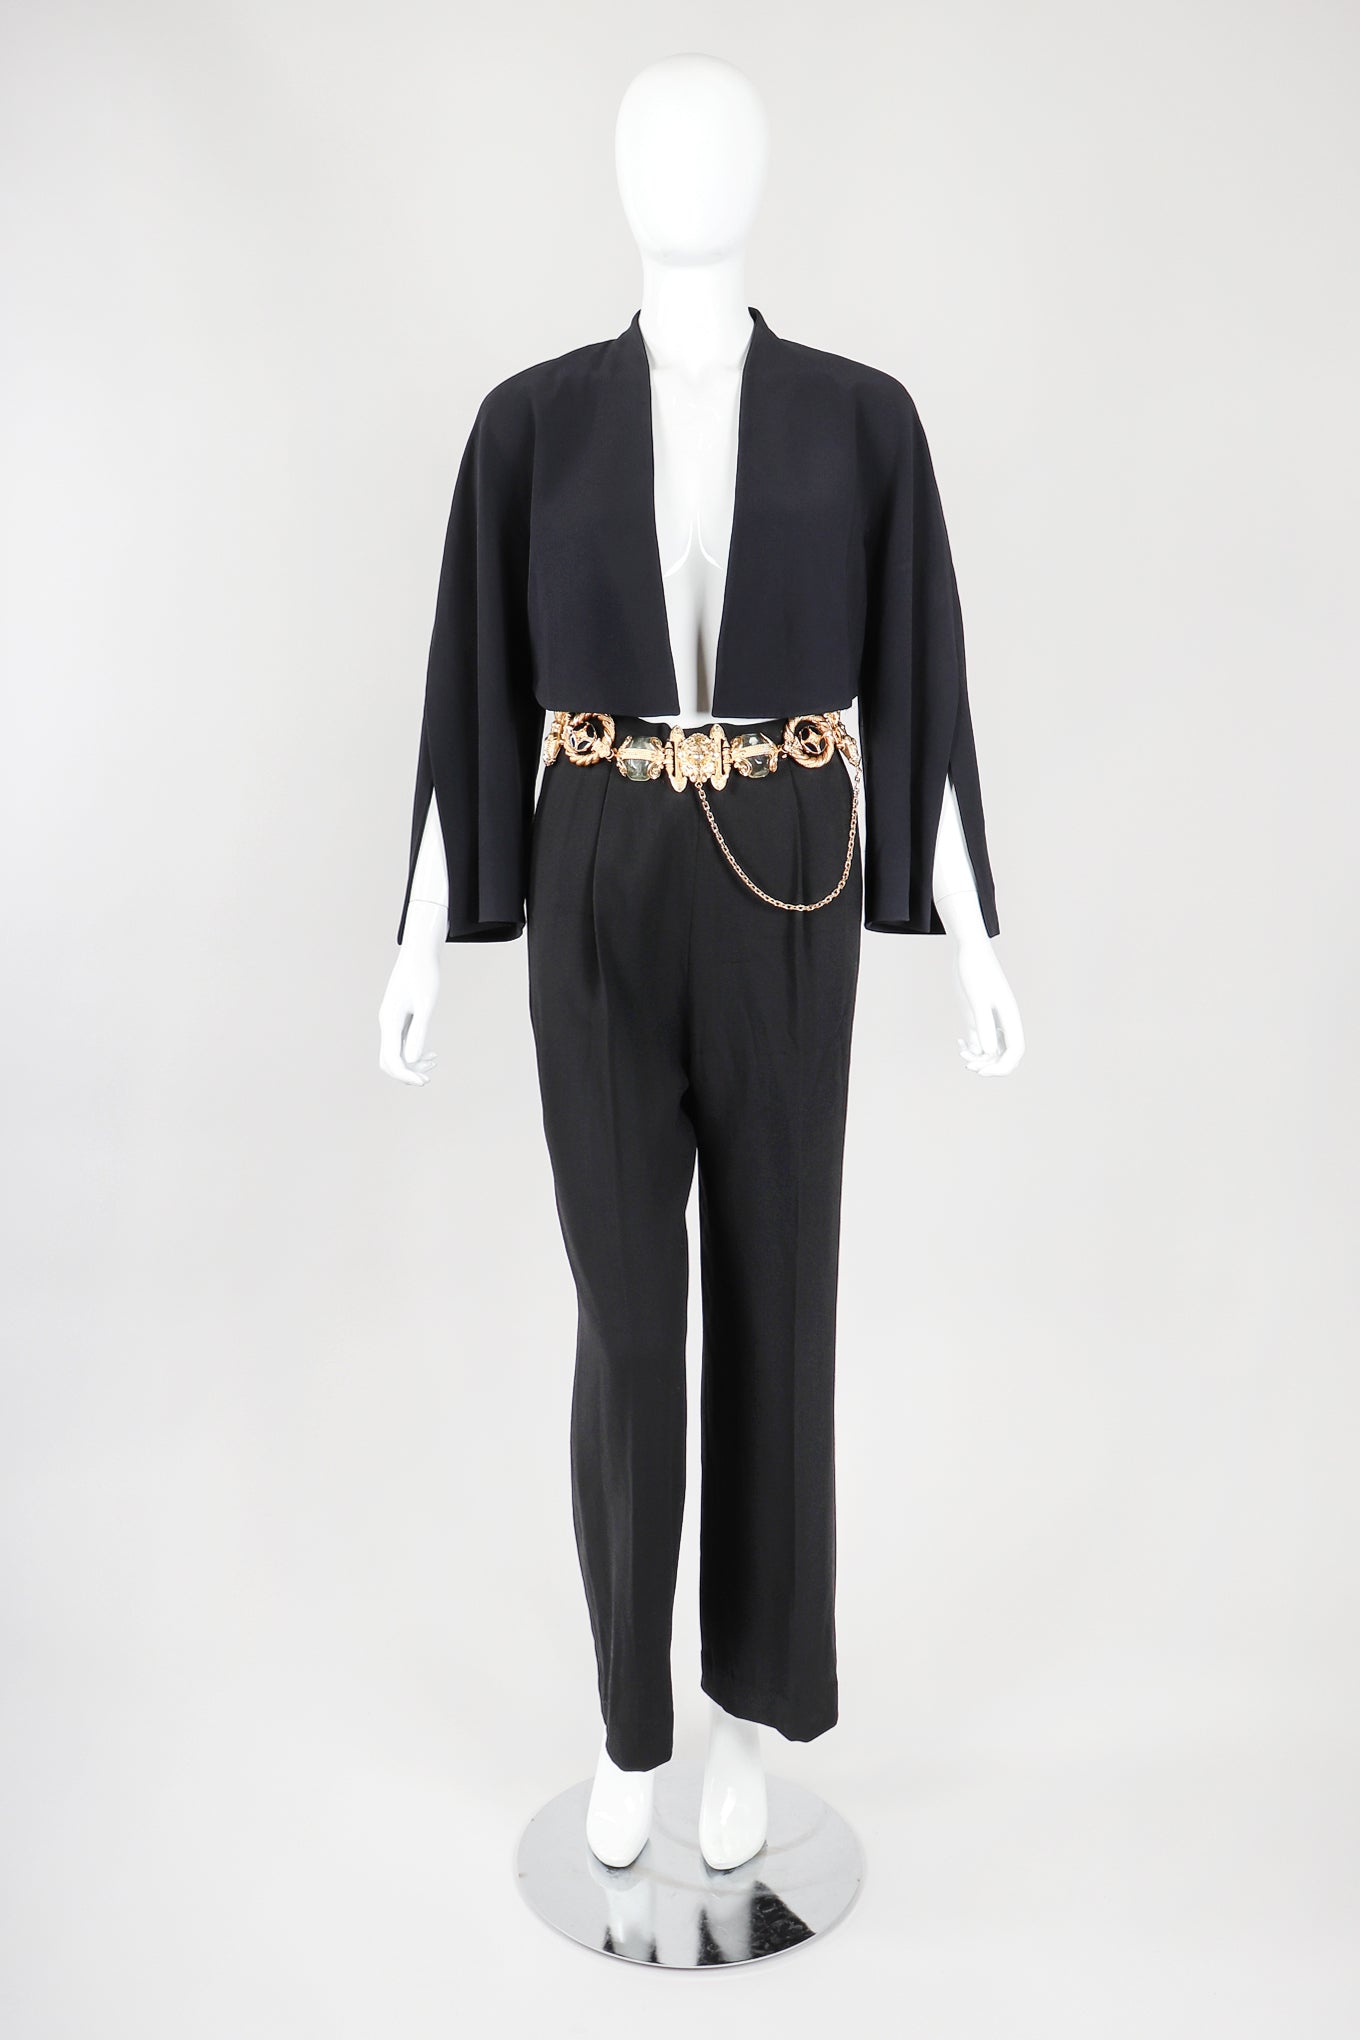 Recess Vintage Gianfranco Ferre Black Jacket, Belted Pant & Suspender Set on Mannequin, Front